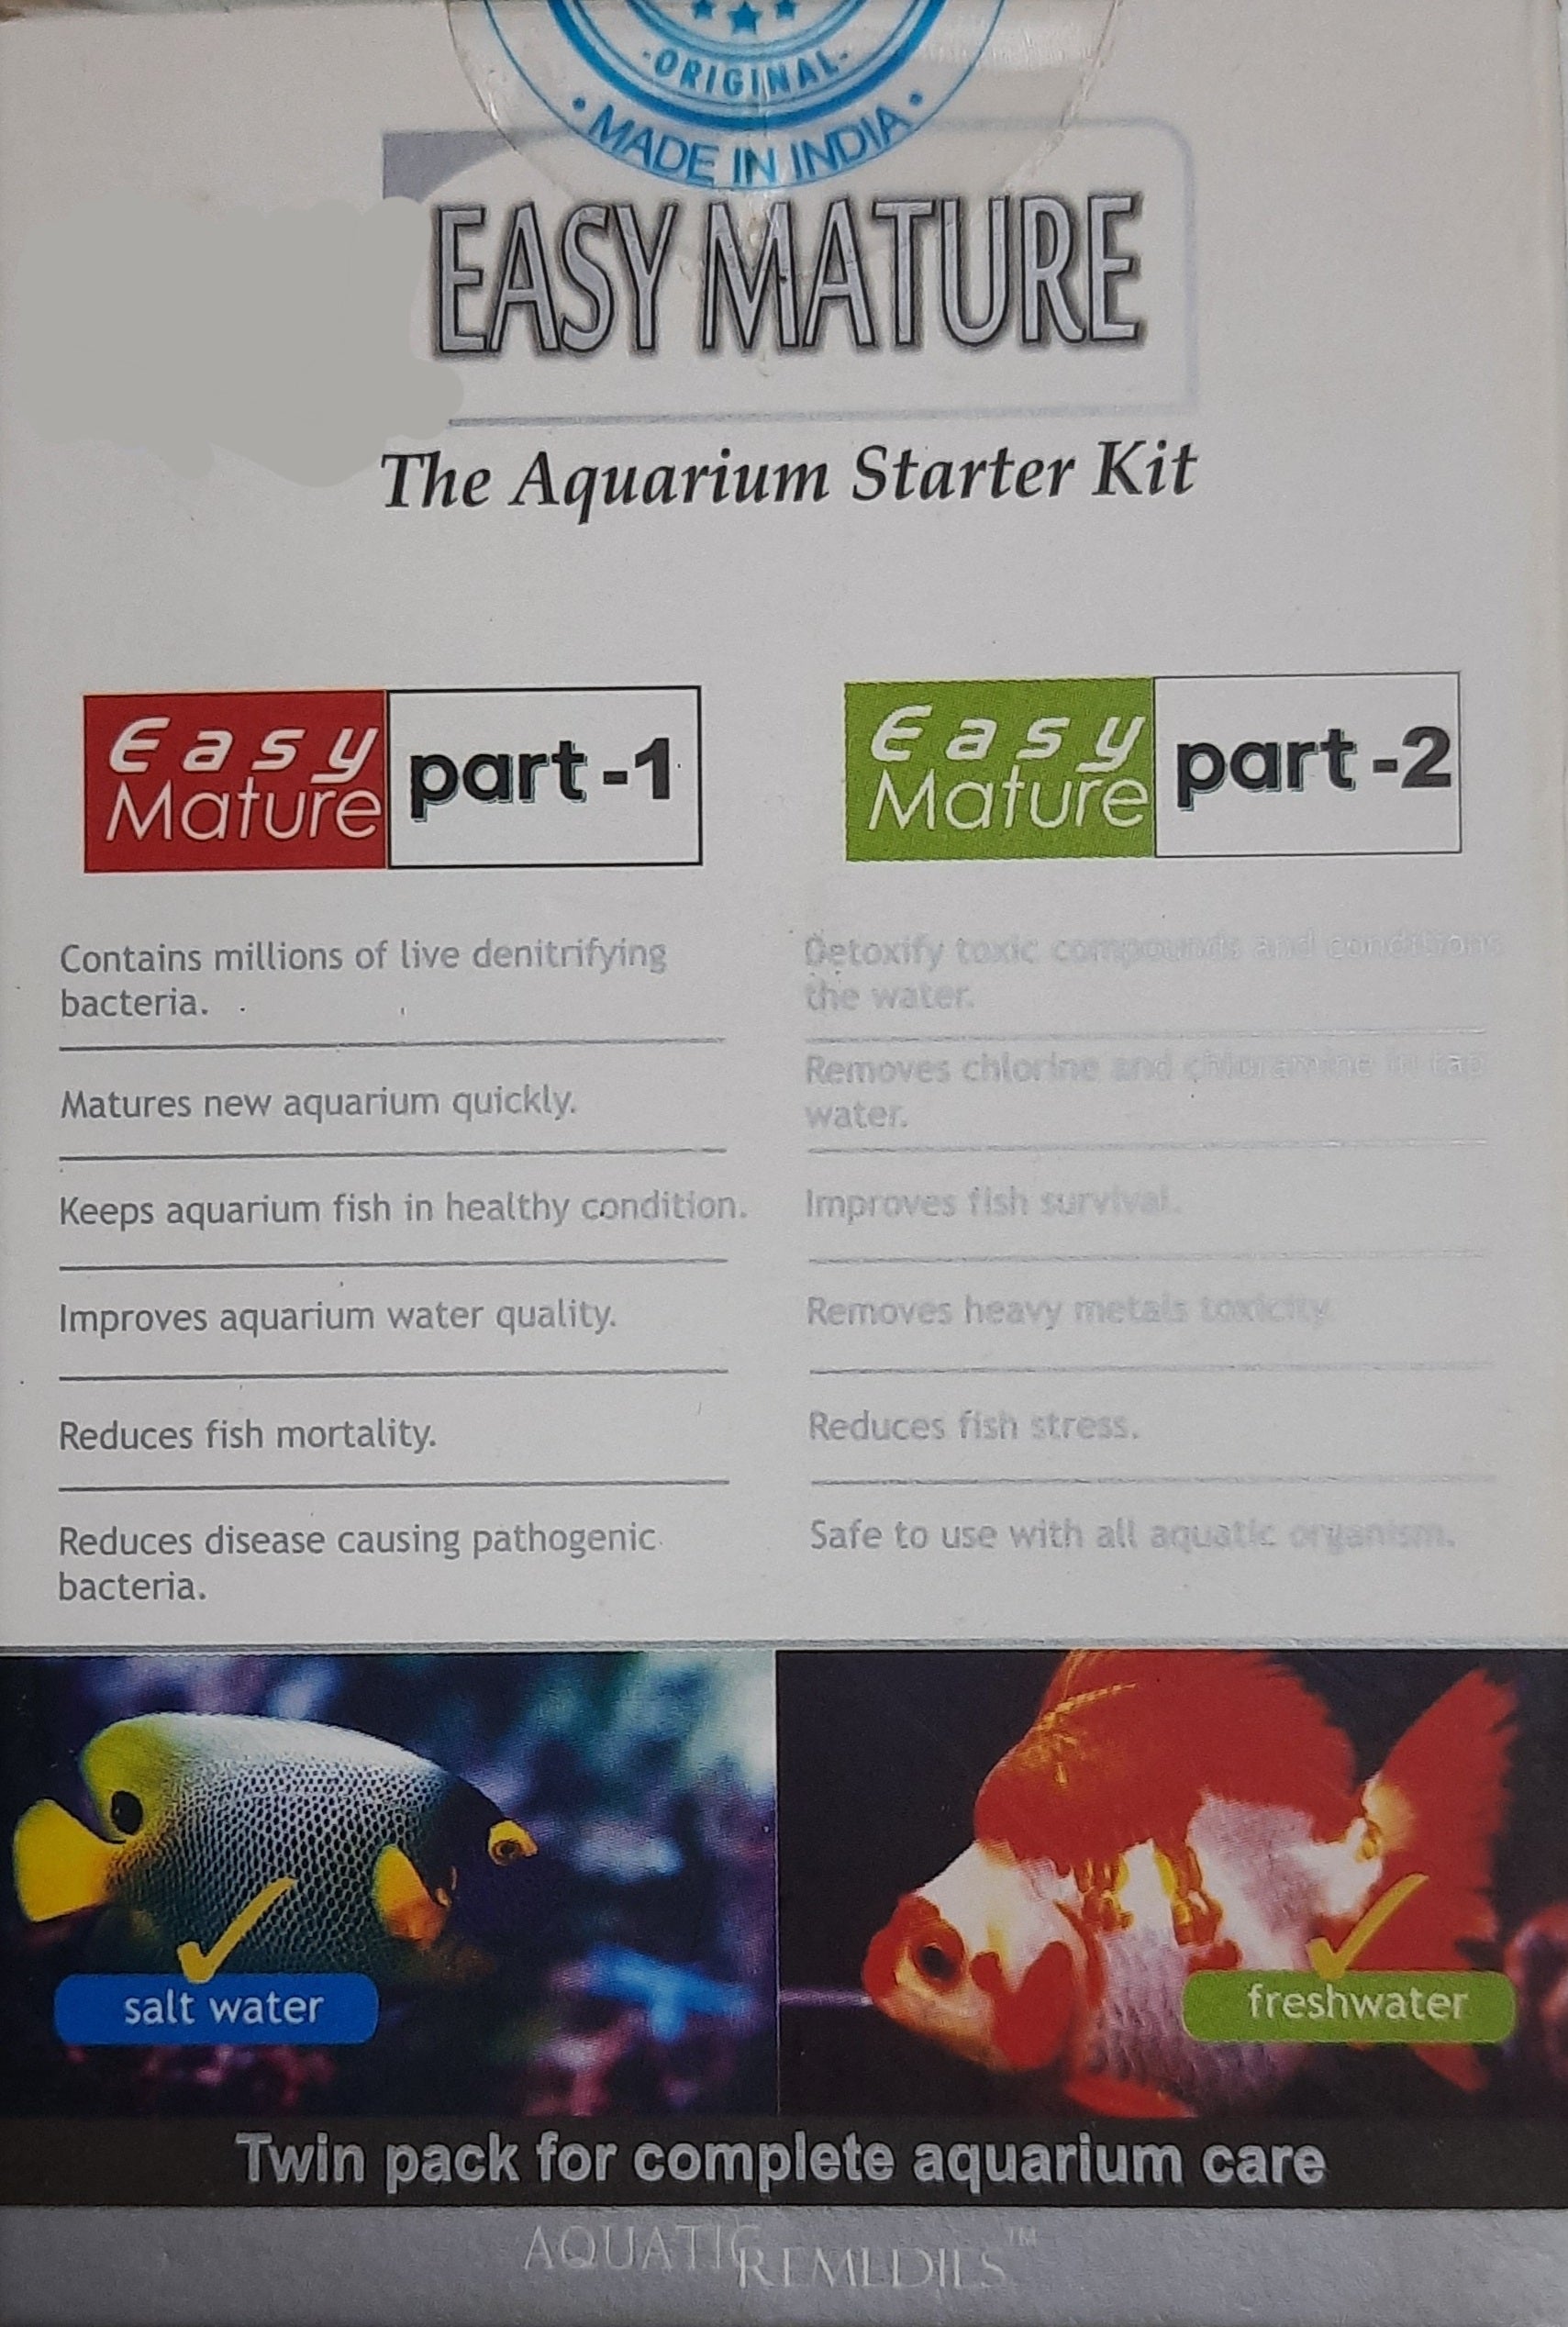 Easy Mature (The Aquarium Starter Kit) - Aquatic Remedies Product